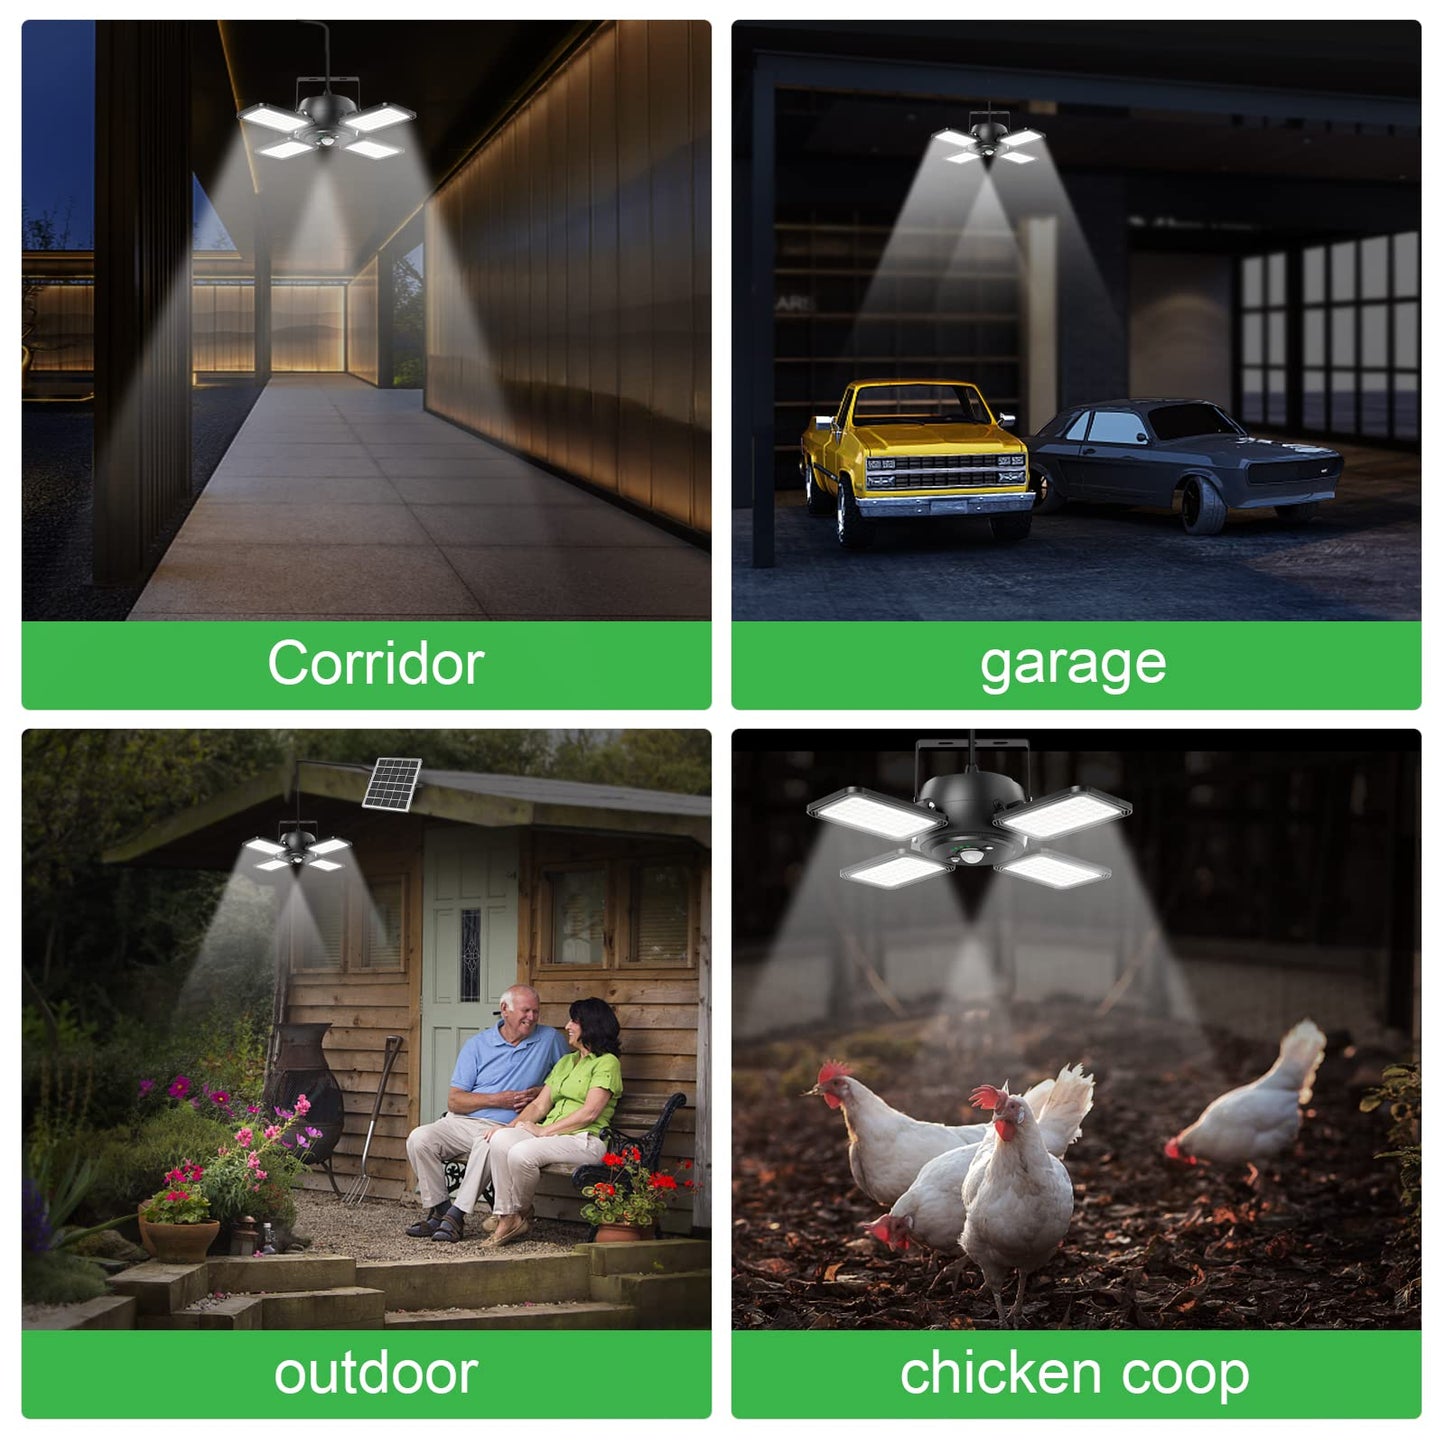 Solar Shed Light Indoor Outdoor 1200LM 144LED Pendant Light, Motion Sensor with Upgrade 5 Lighting Modes & Remote Control 4-Leaf 120°Adjustable Lights for Home Yard Garage